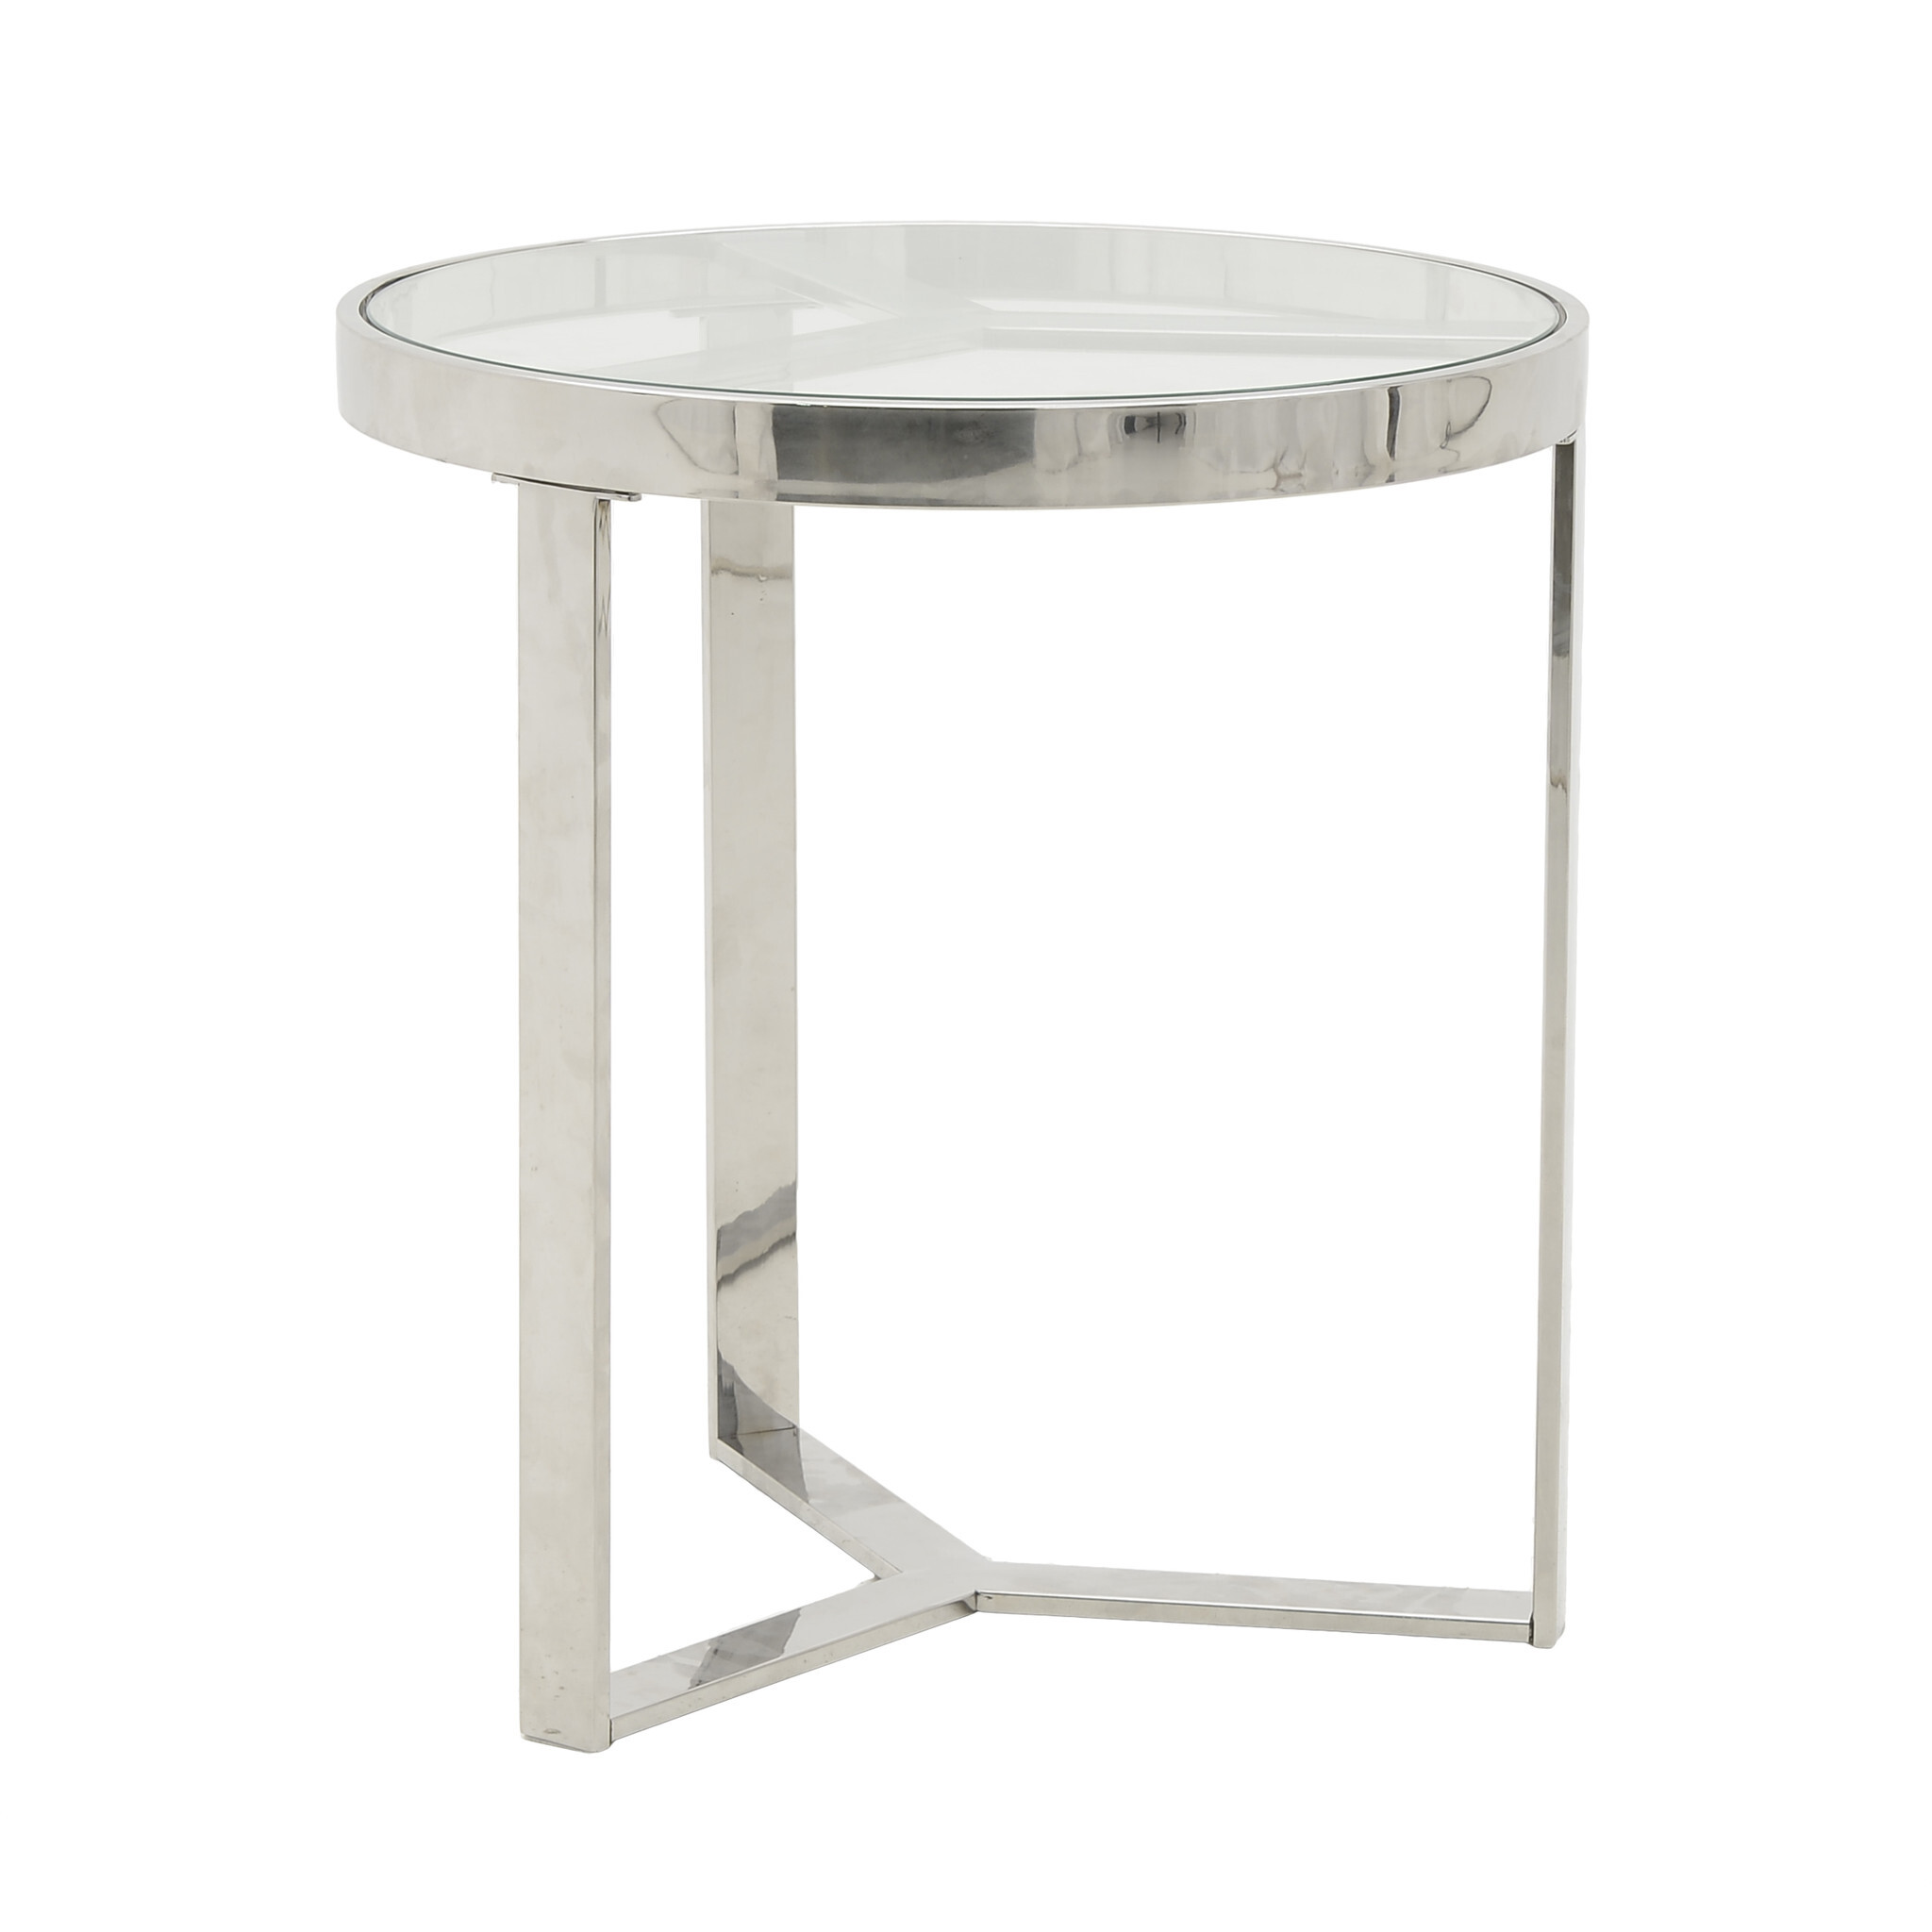 Приставной столик стеклянный круглый с ножками хром Silver Glass Small